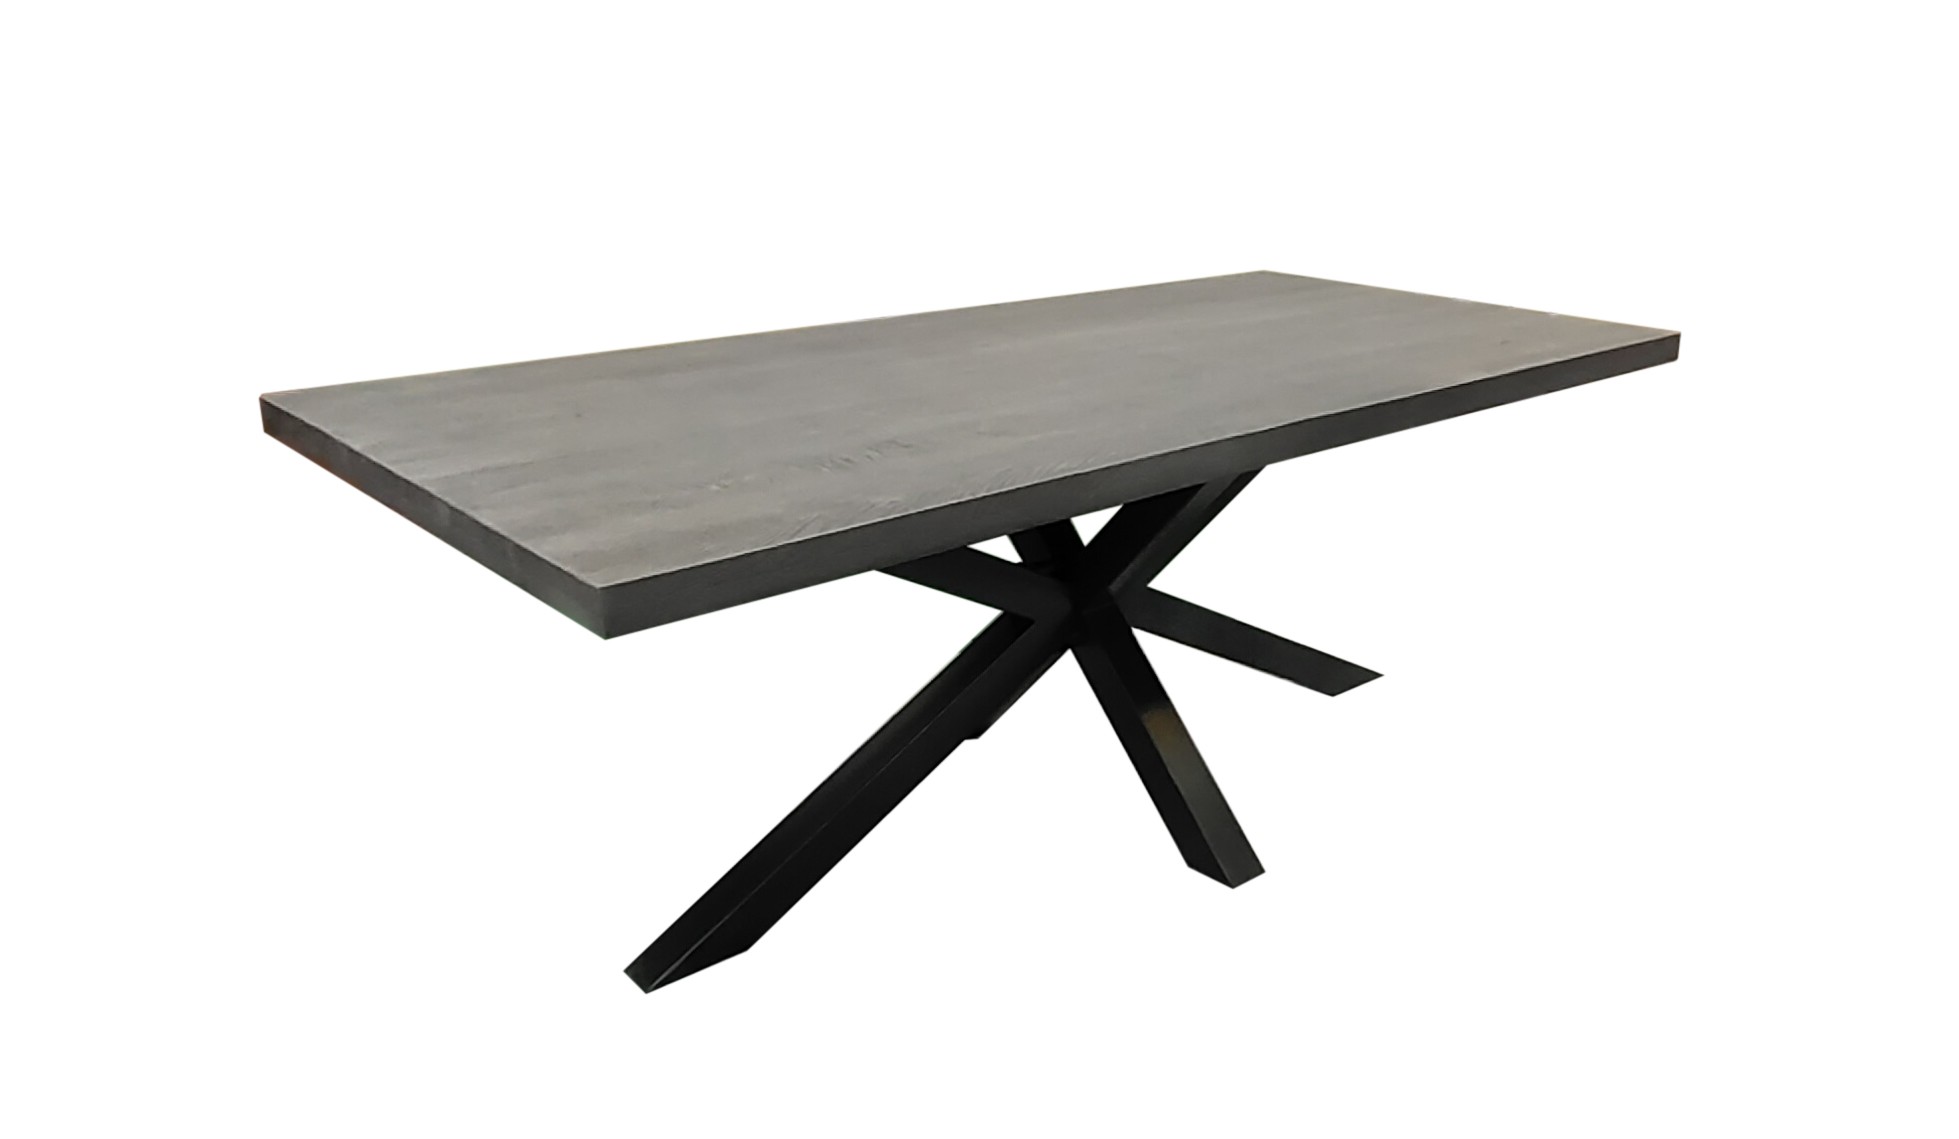 Estila Designový jídelní stůl Comedor z masivního dřeva s kovovými zkříženýma nohama 200